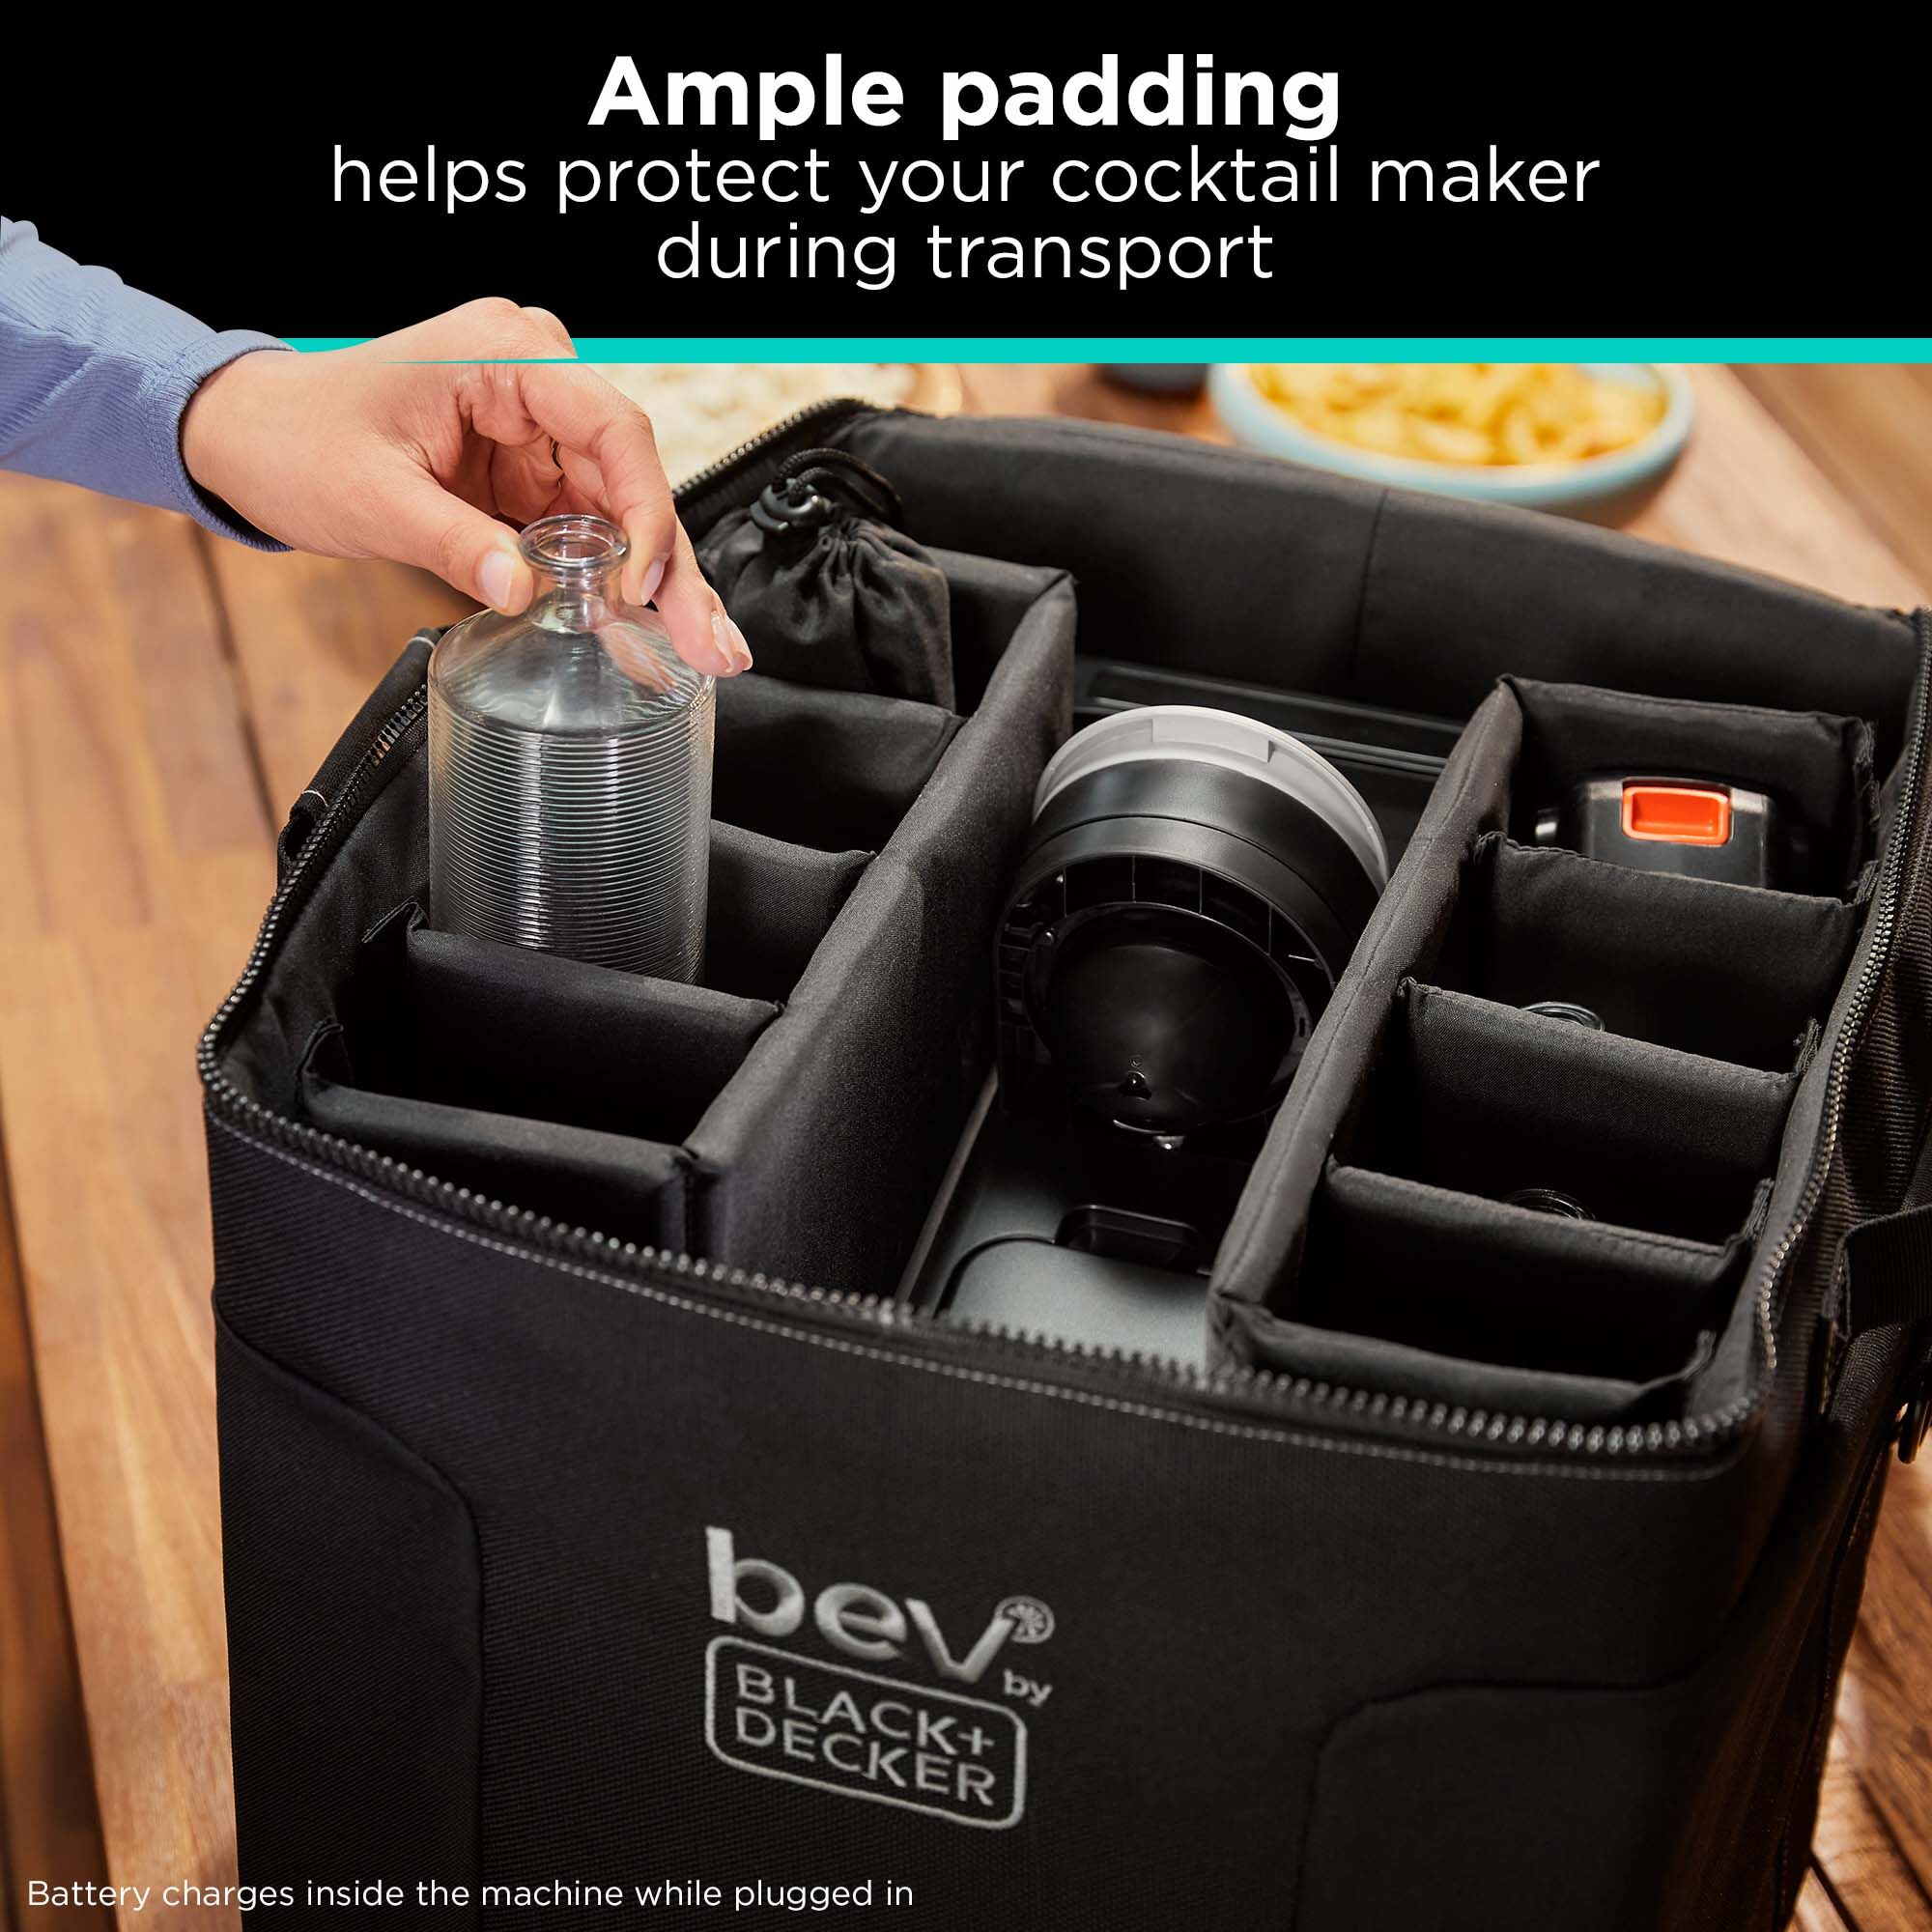 bev by BLACK+DECKER cocktail maker bag provides ample padding